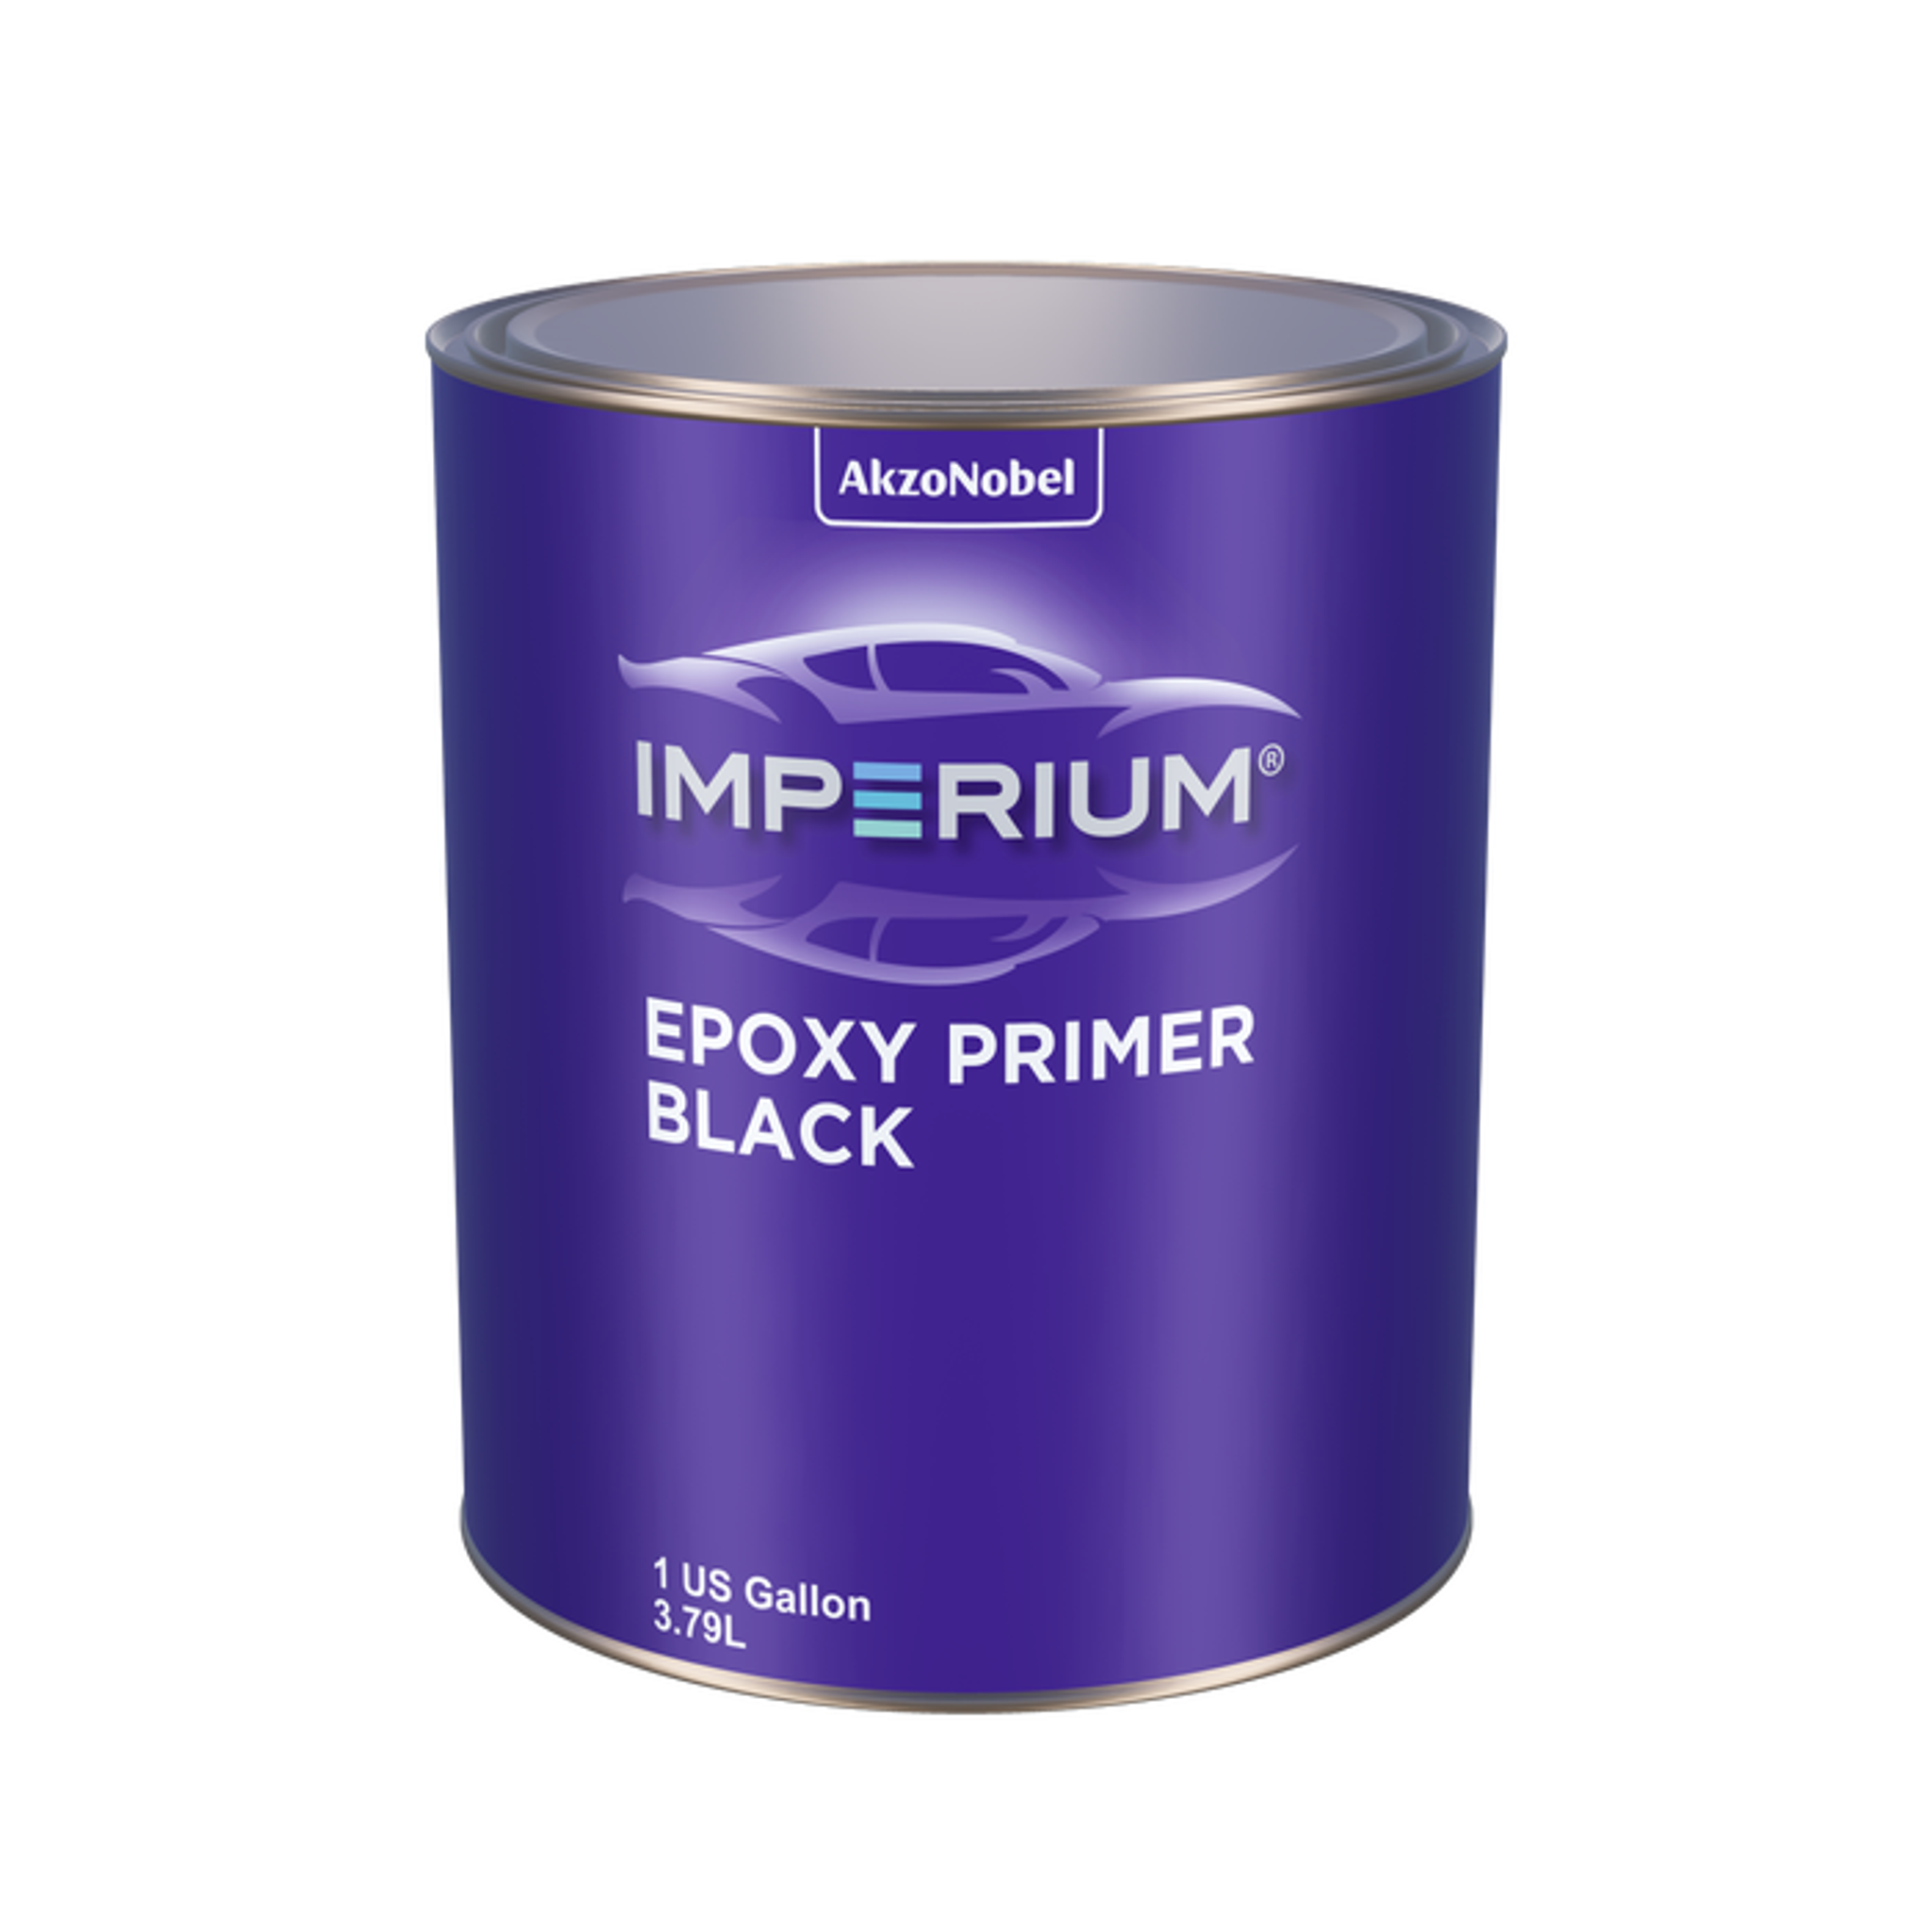 IMPERIUM EPOXY PRIMER BLACK